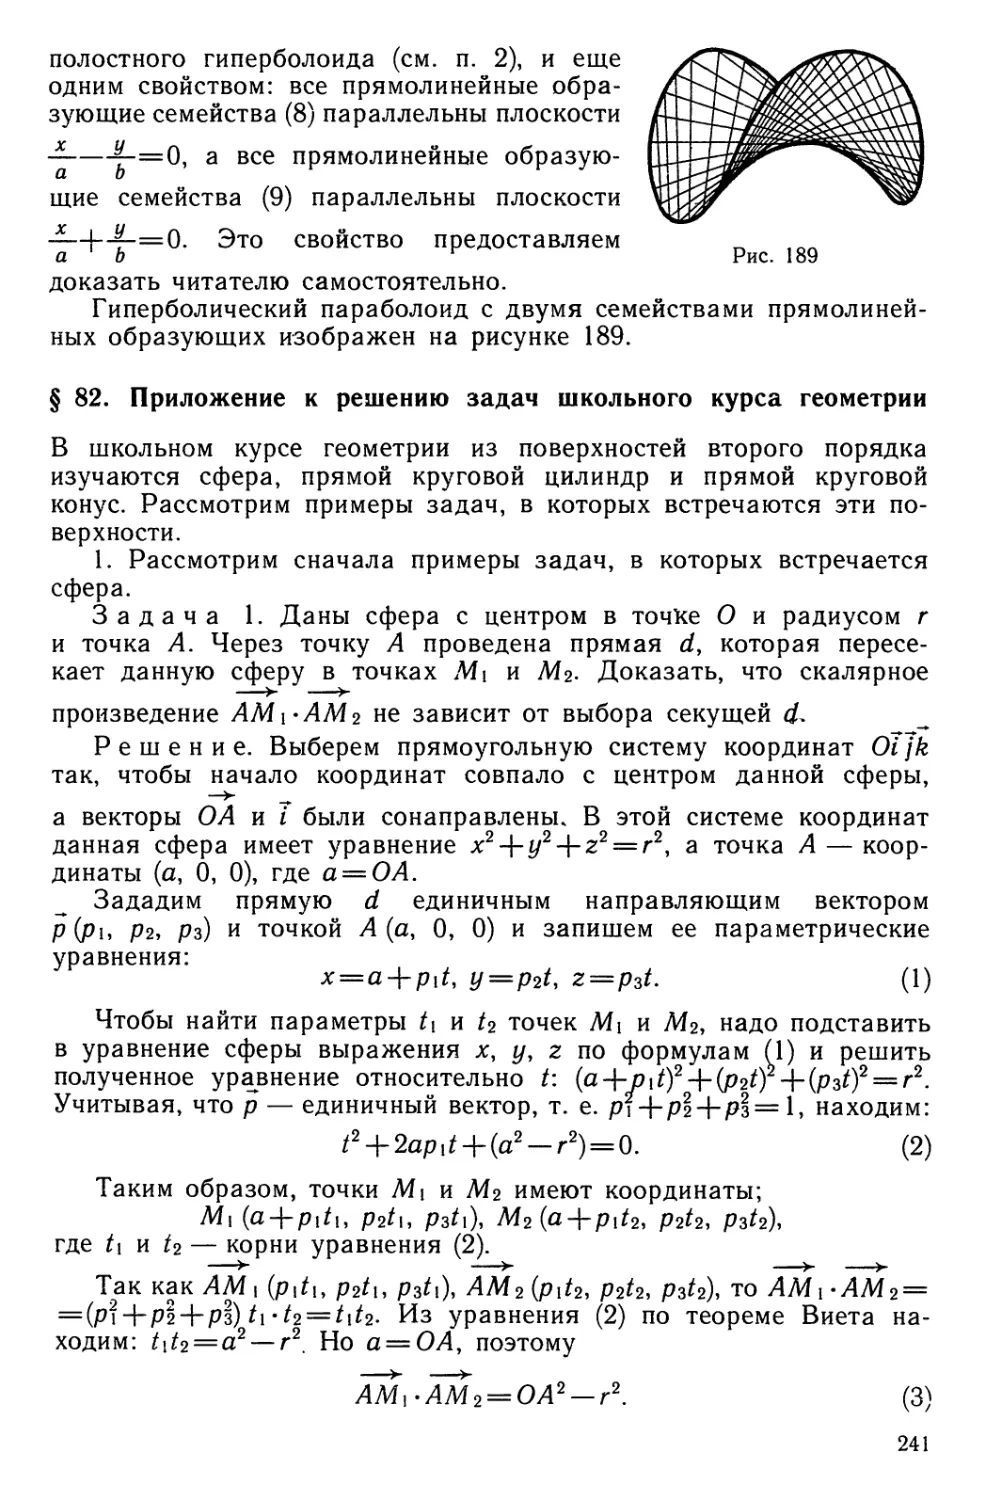 § 82. Приложение к решению задач школьного курса геометрии